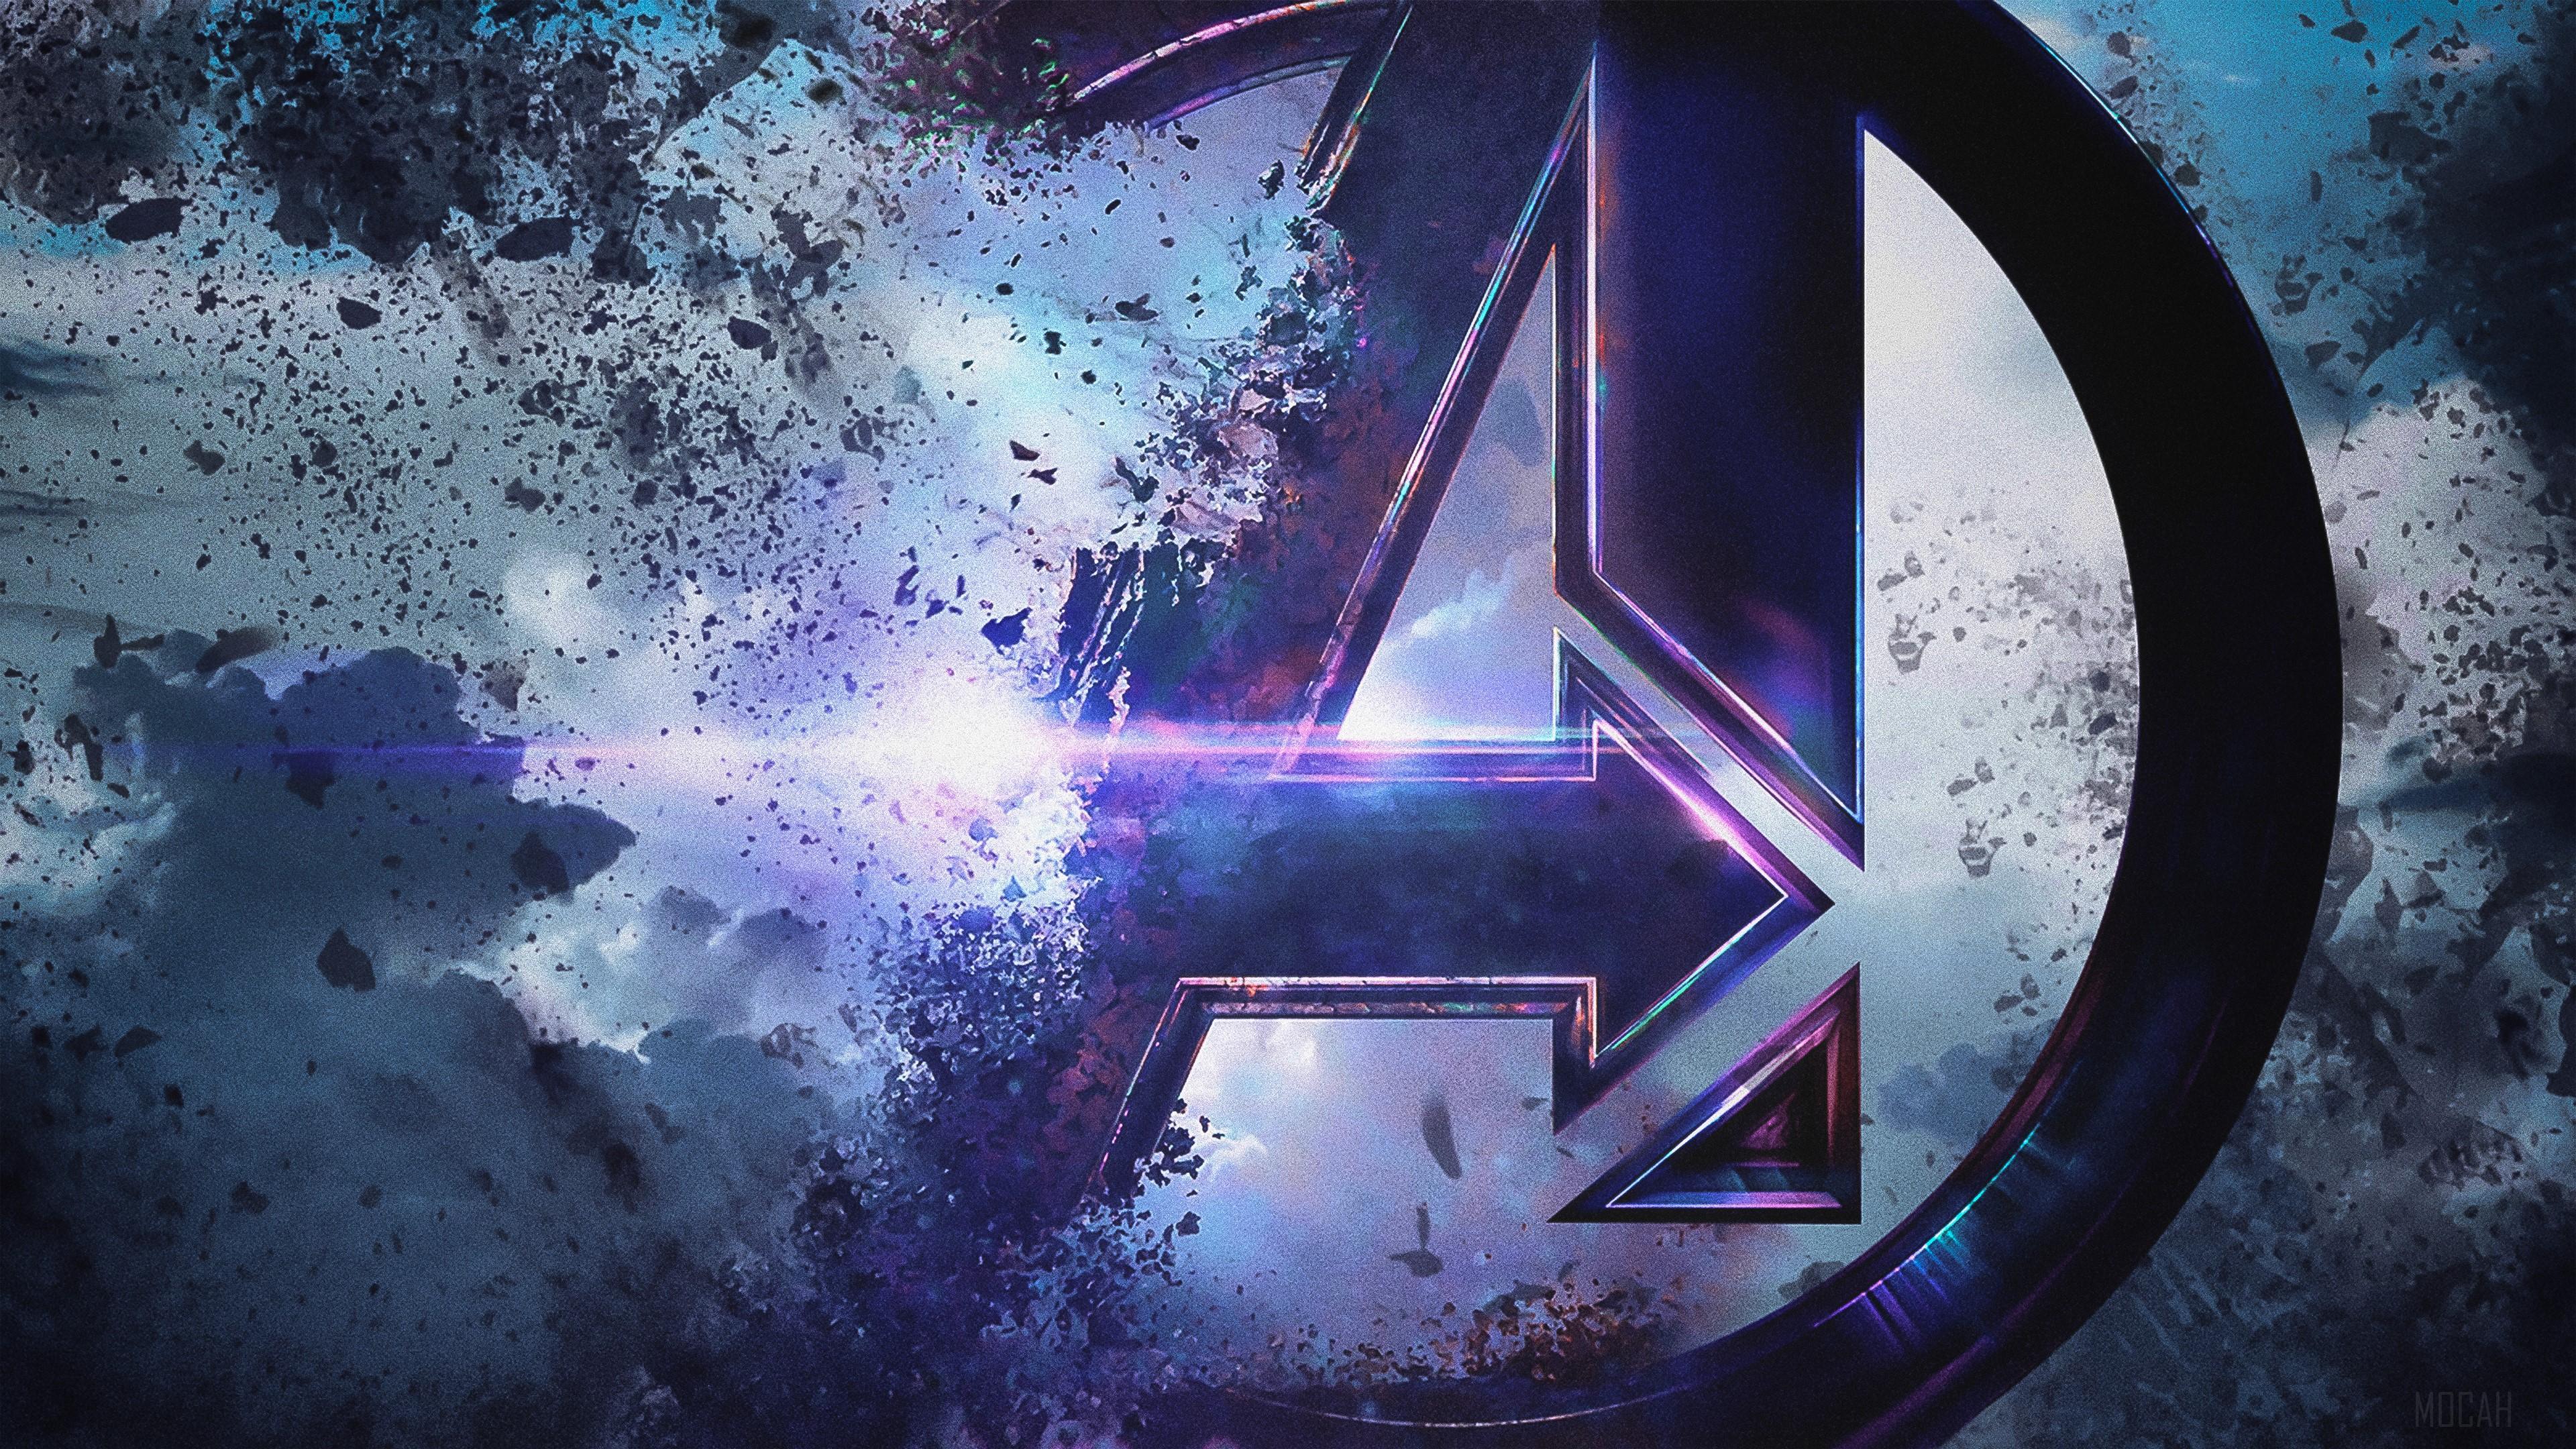 HD wallpaper, 4K Avengers Endgame 4K